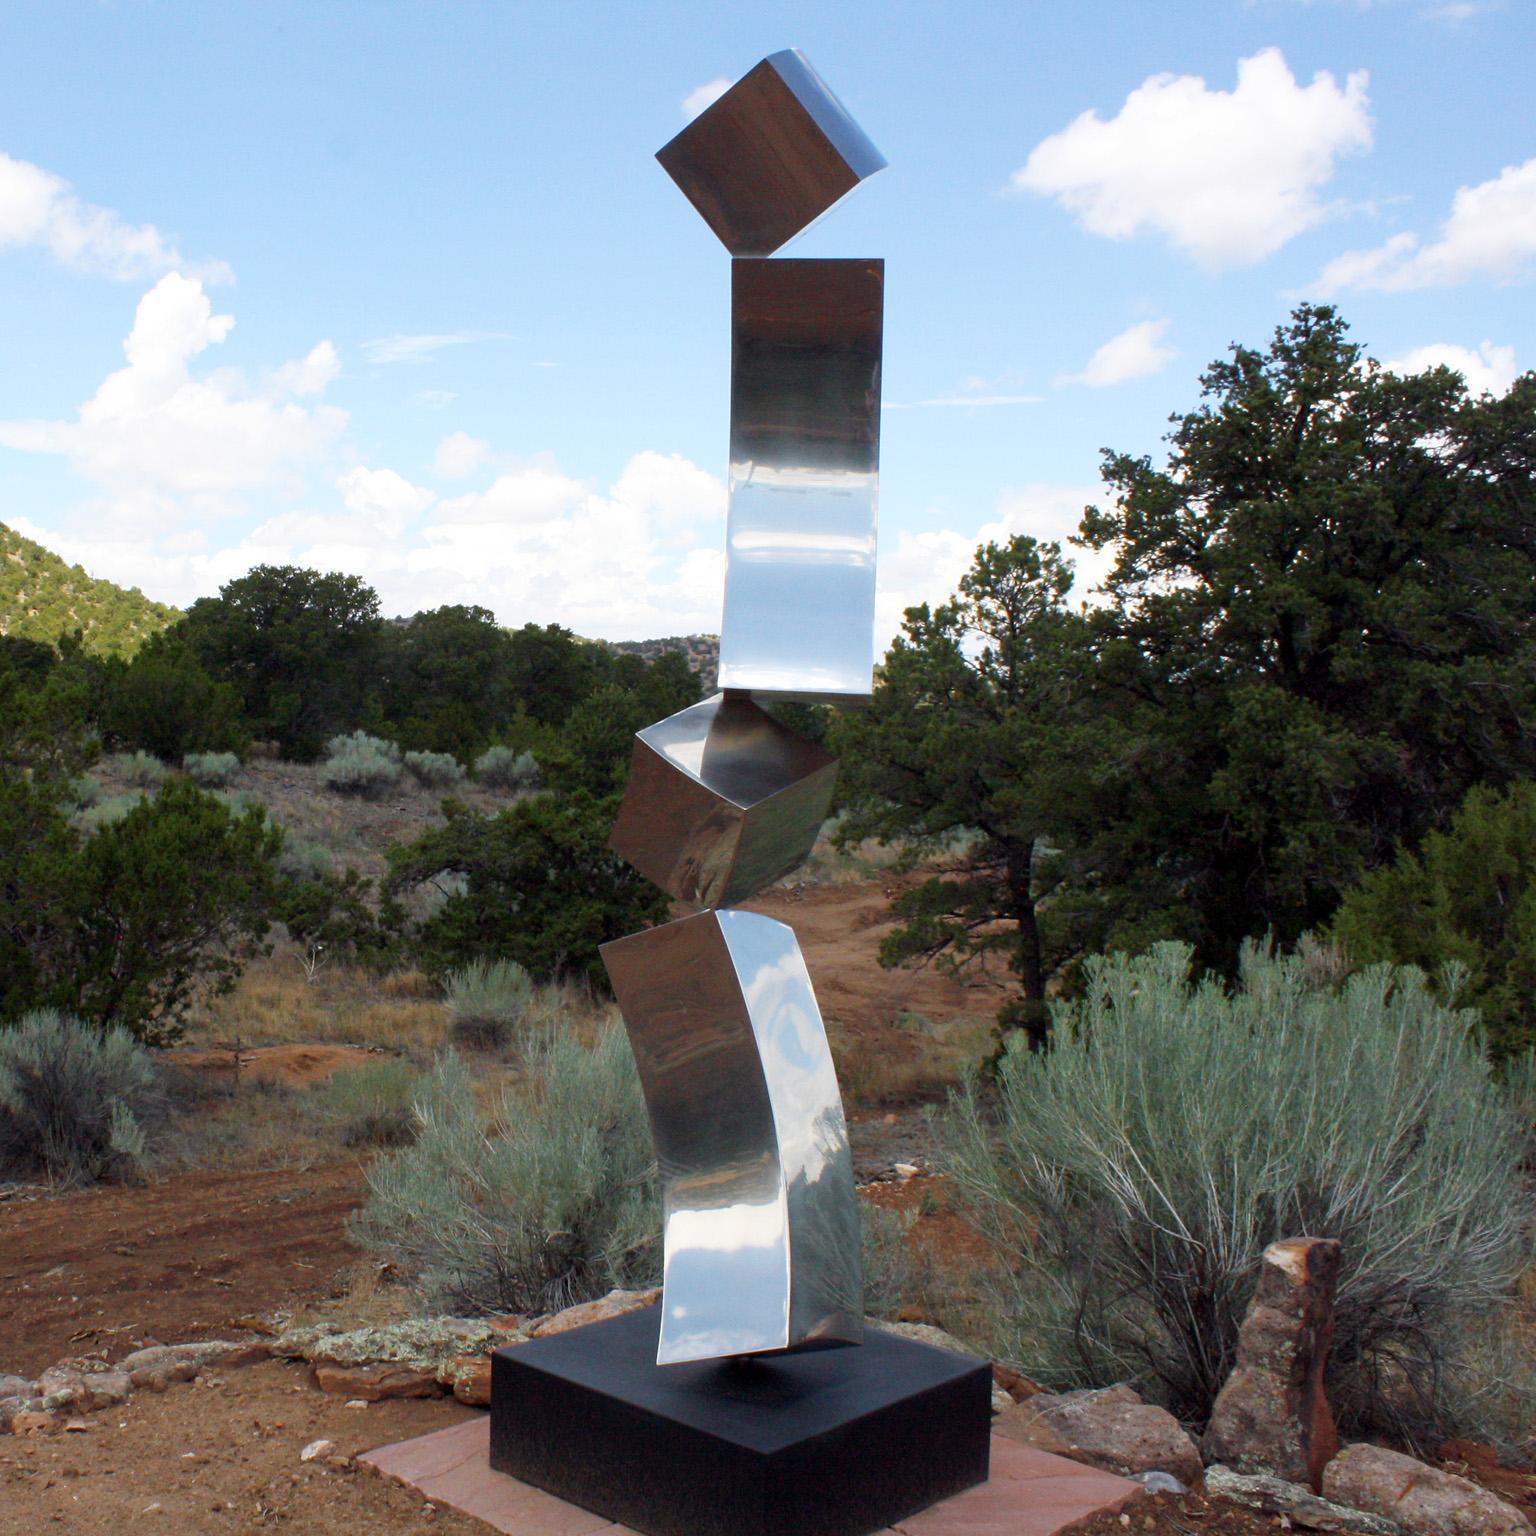 "A.I.C. par Gino Miles
Sculpture abstraite en acier inoxydable poli (les dimensions comprennent la base de 12" x 30" x 30").

Travaillant principalement l'acier inoxydable et le bronze, Gino Miles crée des pièces axées sur un minimalisme élégant et